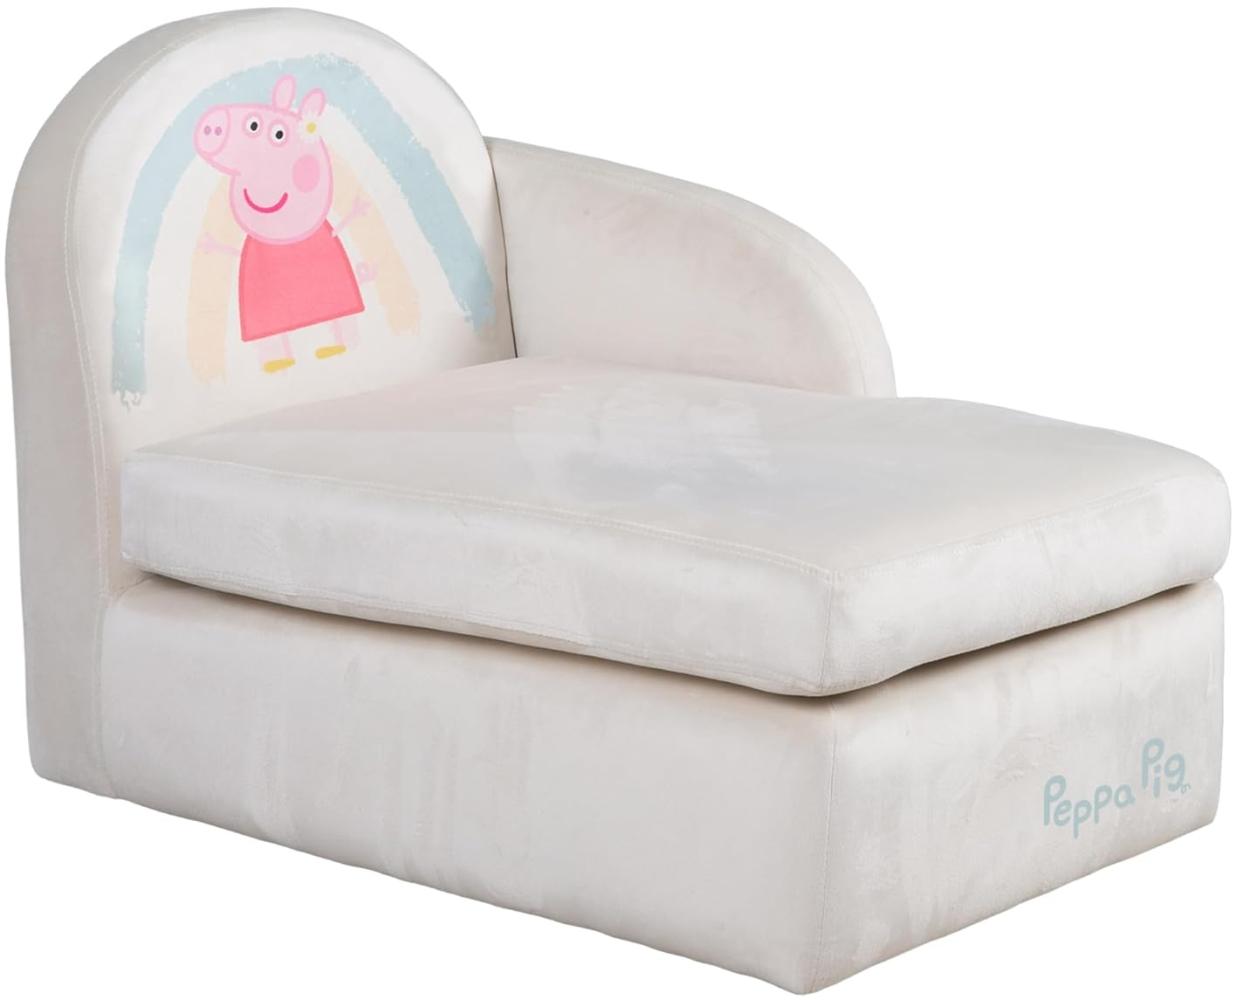 roba Kindersofa Peppa Pig im Lounge Stil - Kindercouch mit Armlehne für Mädchen & Jungen ab 18 Monaten - Belastbar bis 80 kg - Beige/Rosa Bild 1